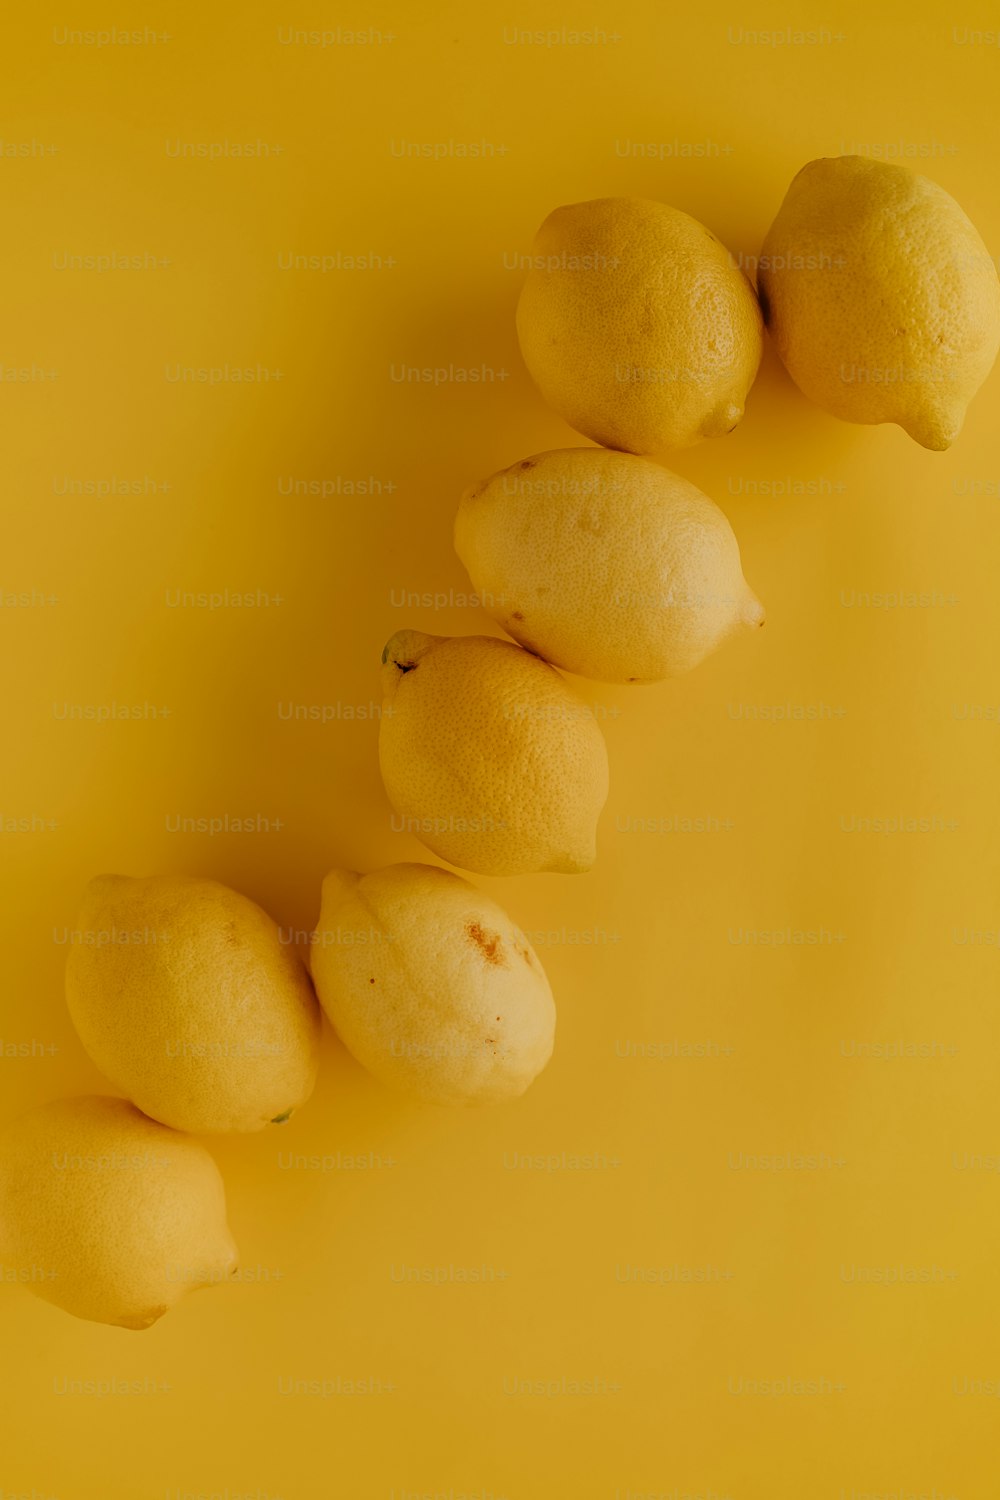 Una hilera de limones sentados encima de una superficie amarilla